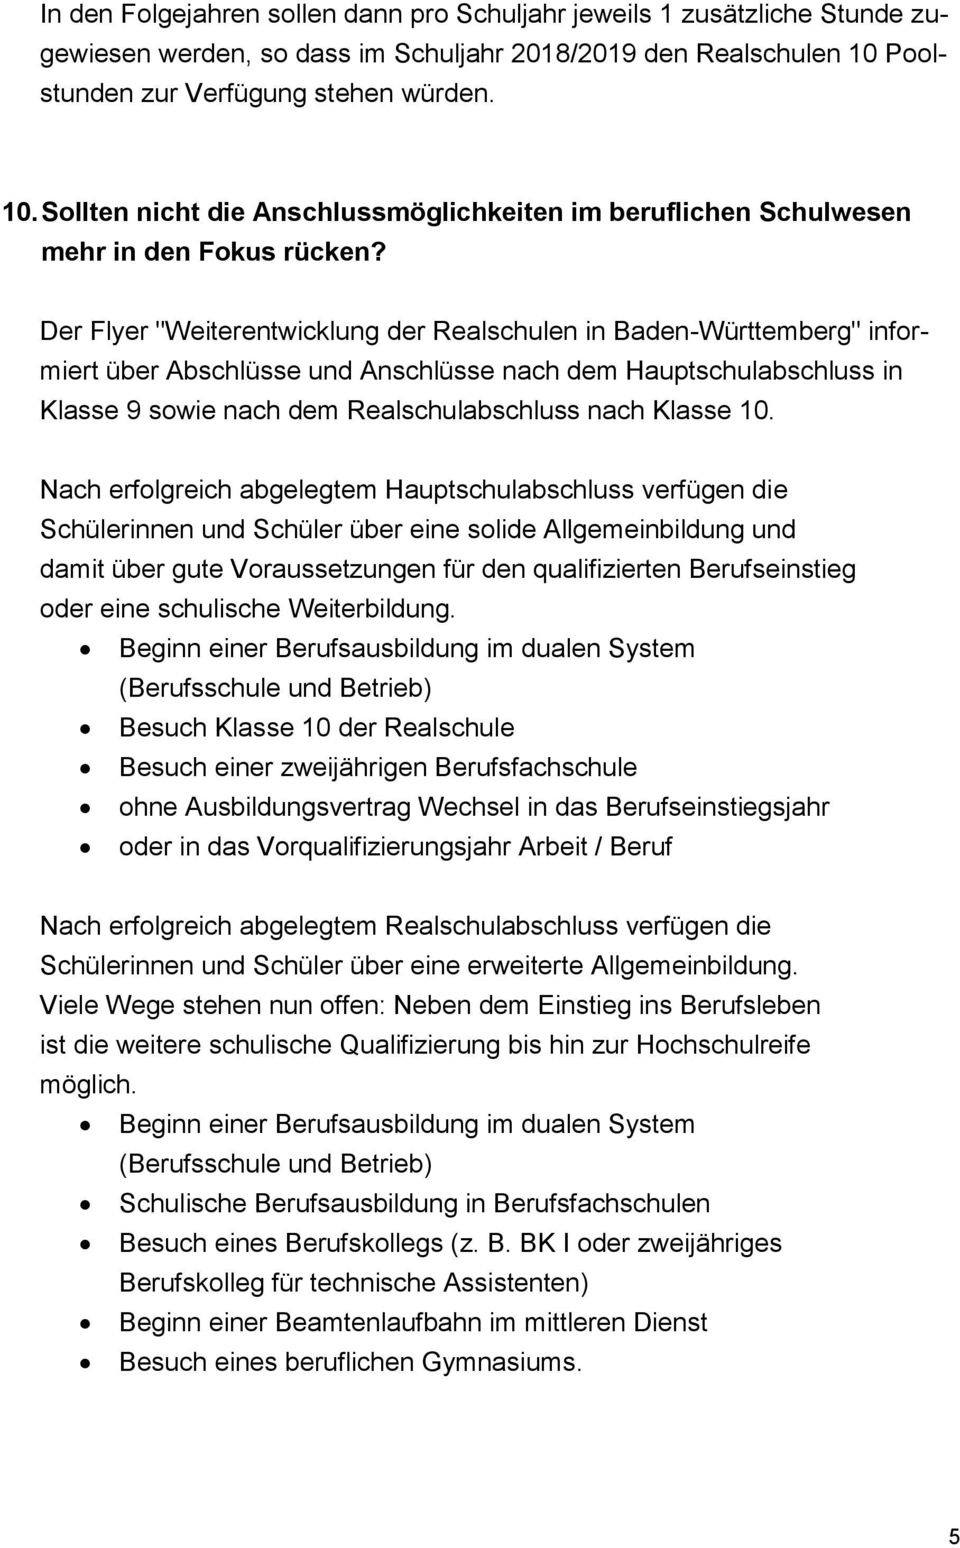 Der Flyer "Weiterentwicklung der Realschulen in Baden-Württemberg" informiert über Abschlüsse und Anschlüsse nach dem Hauptschulabschluss in Klasse 9 sowie nach dem Realschulabschluss nach Klasse 10.